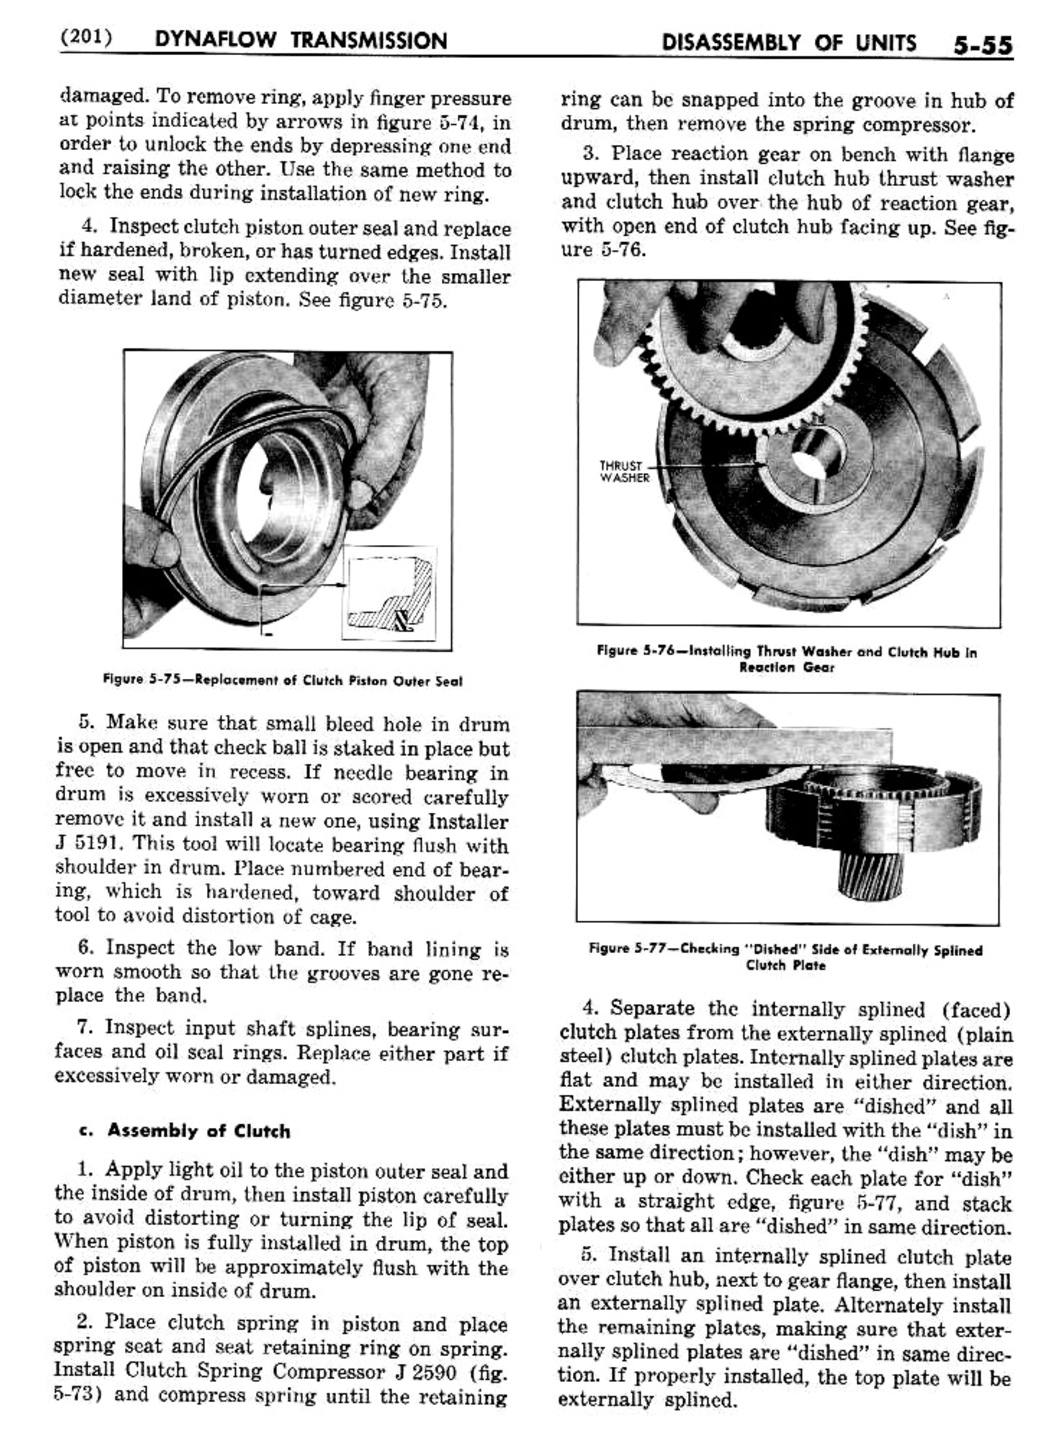 n_06 1956 Buick Shop Manual - Dynaflow-055-055.jpg